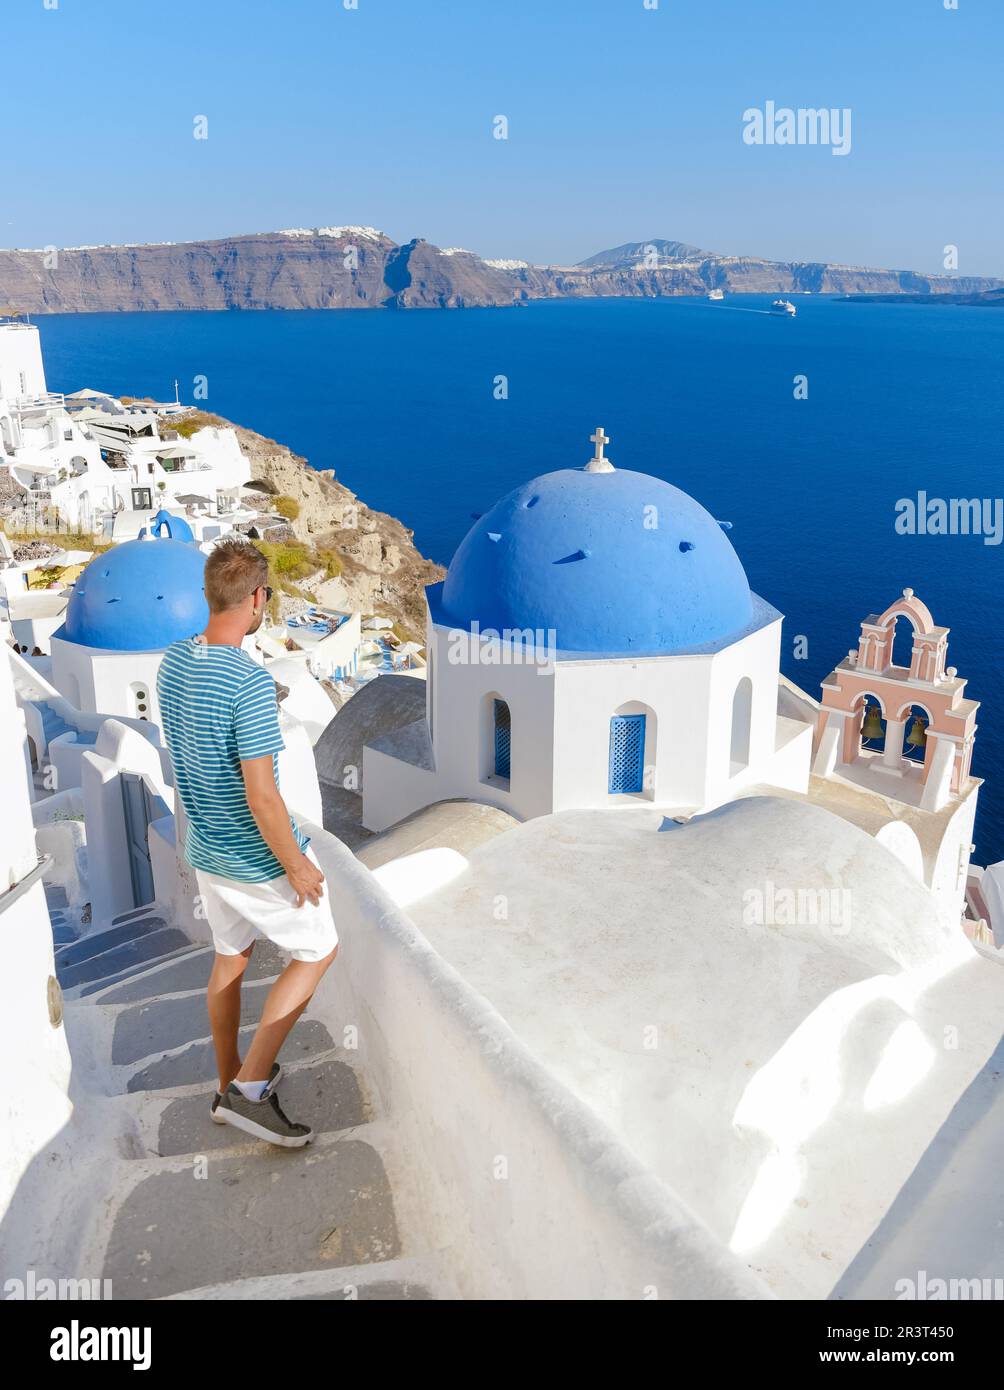 Junge Touristen besuchen Oia Santorini Griechenland im Sommer mit weiß getünchten Häusern und Kirchen Stockfoto